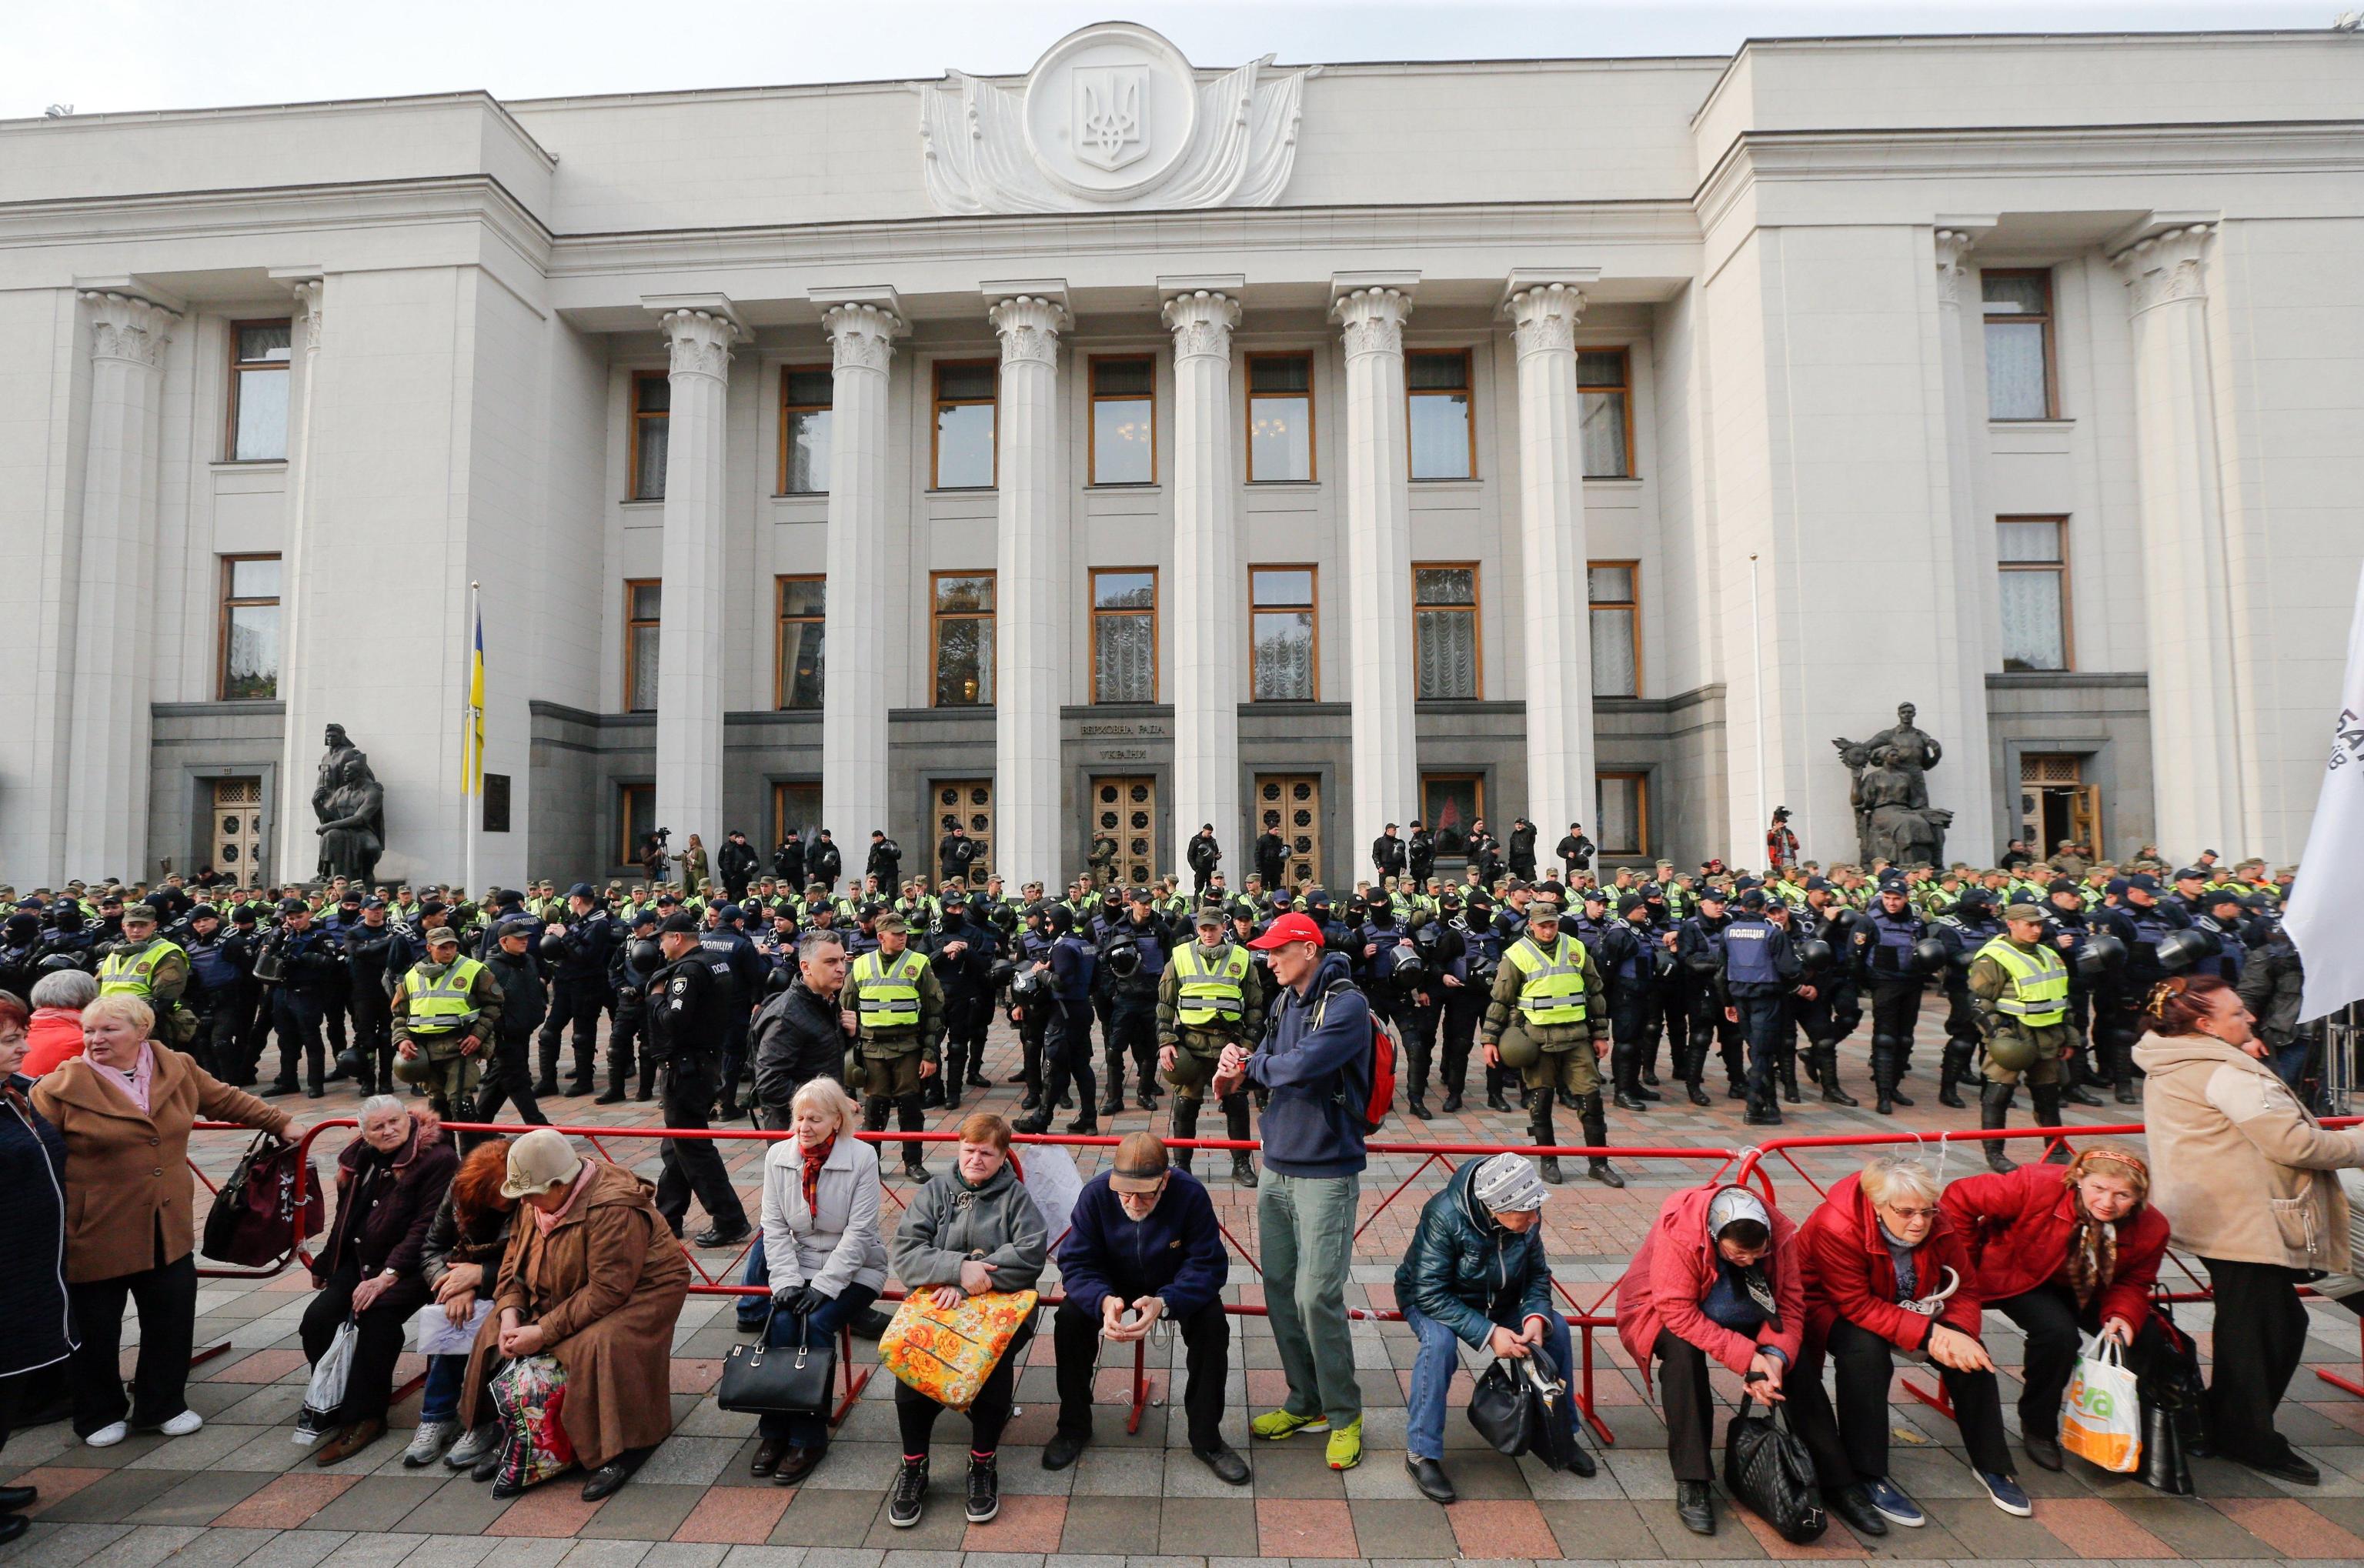 L’entrata del Verkhovna Rada, il parlamento ucraino. Numerose le forze di polizie impiegate per tenere sotto controllo le proteste